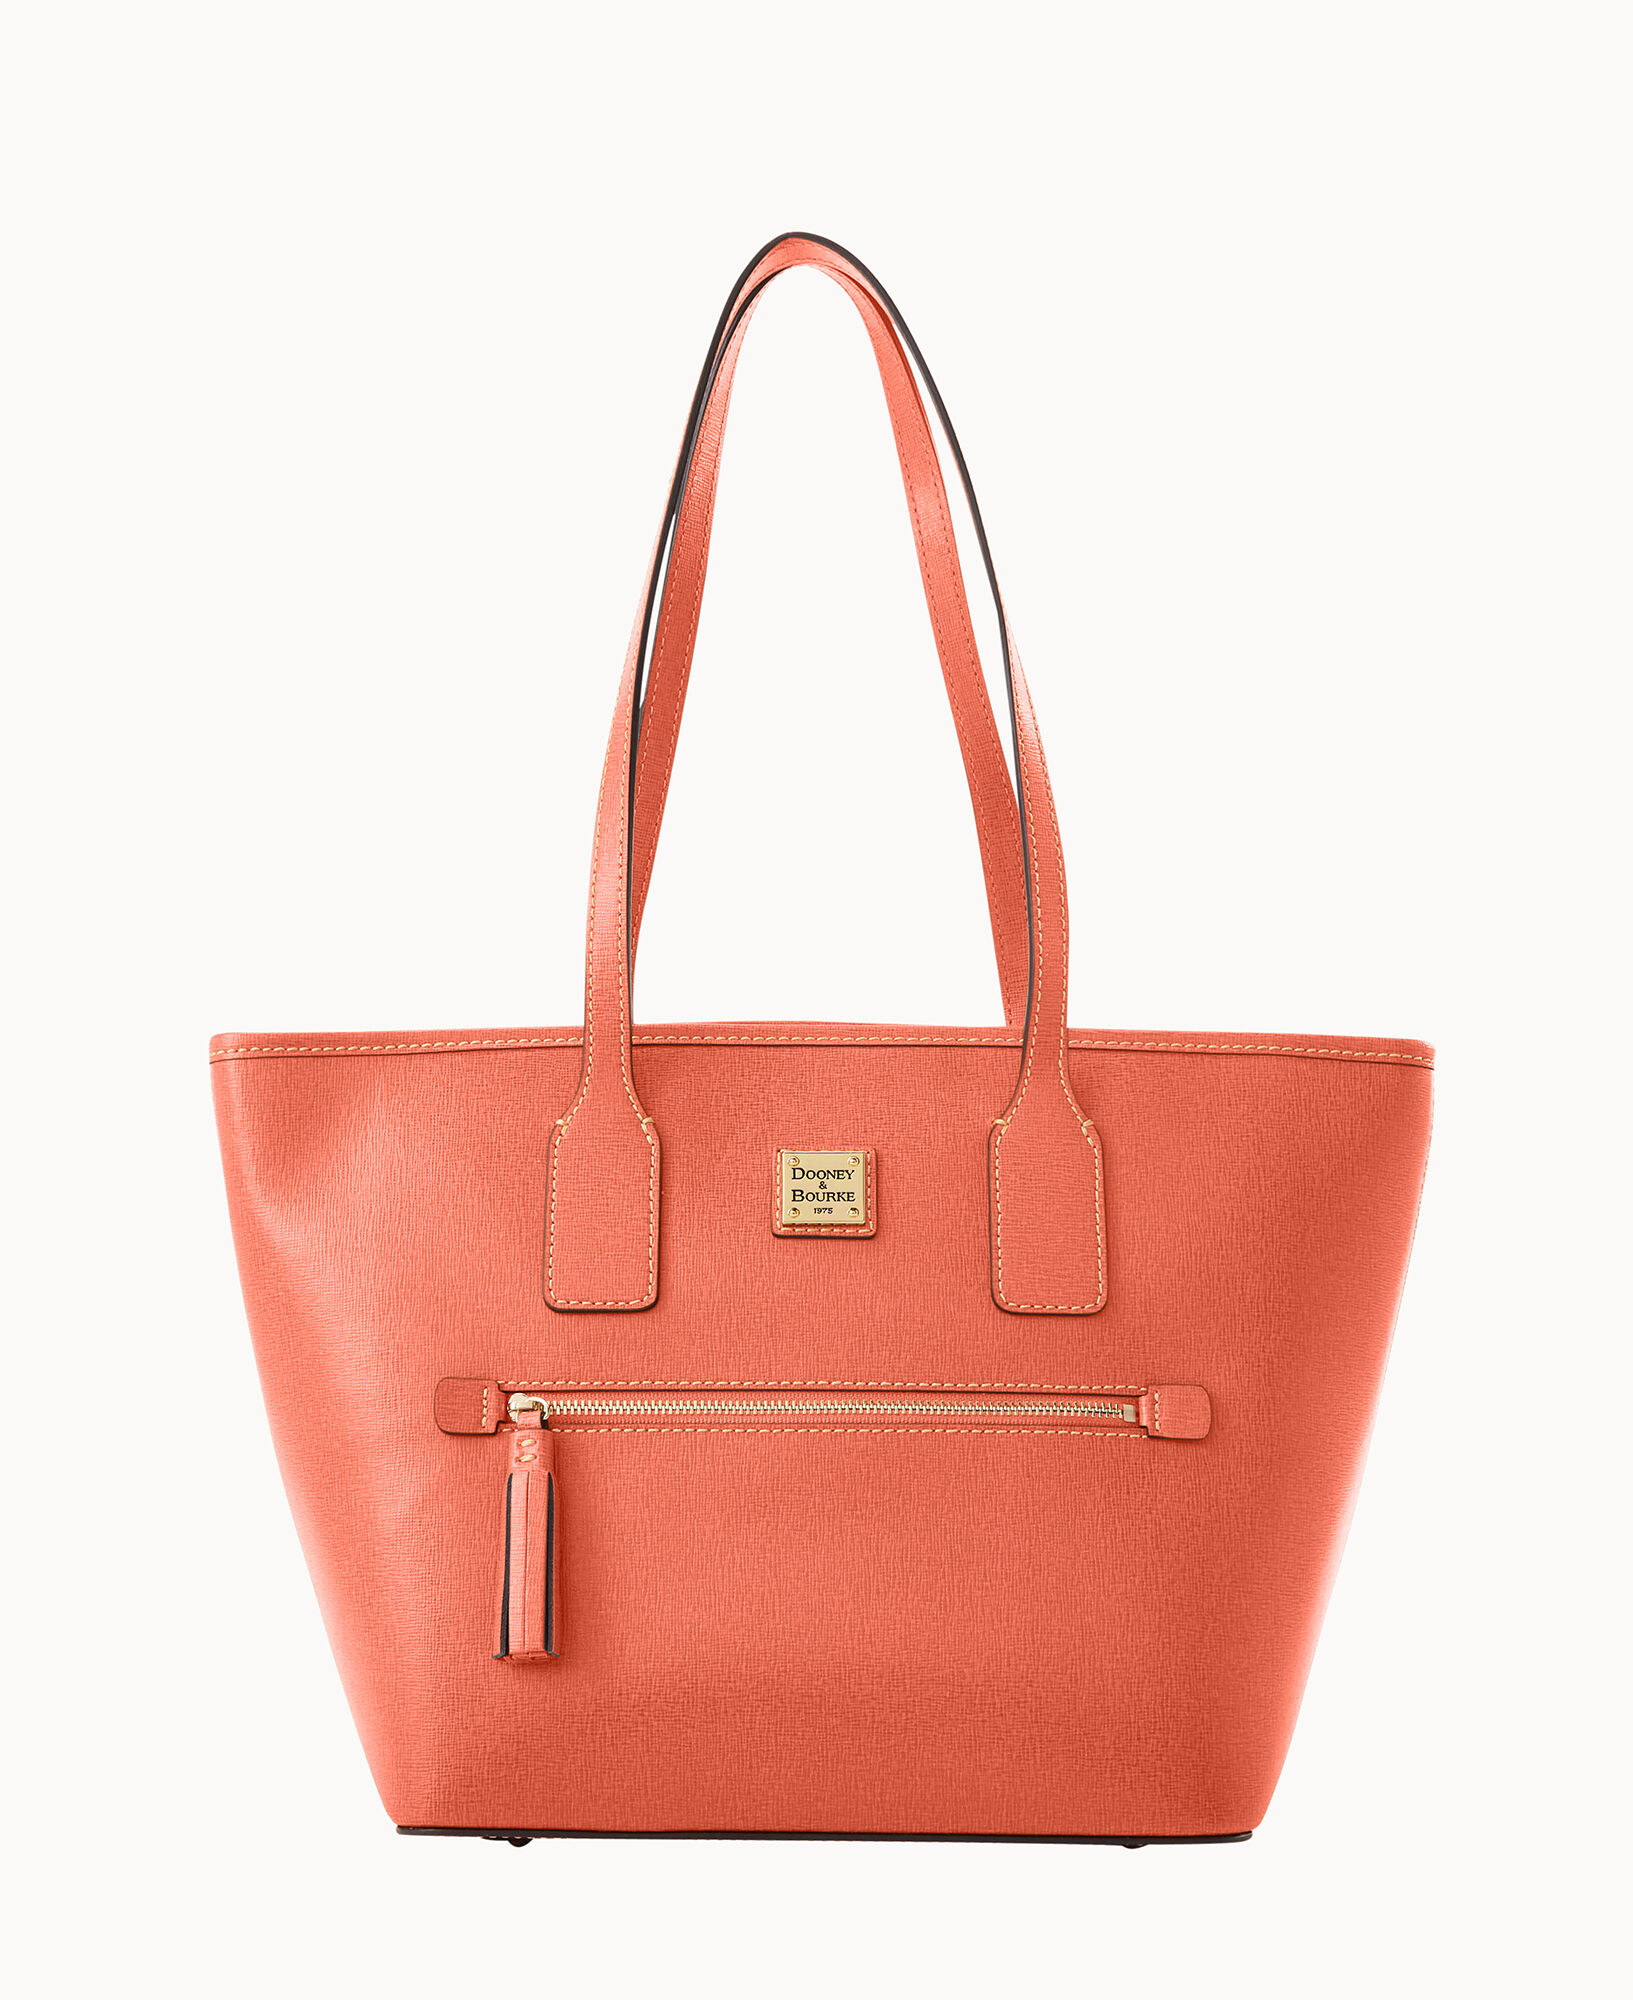 Dooney & Bourke Women's Bags & Handbags for sale